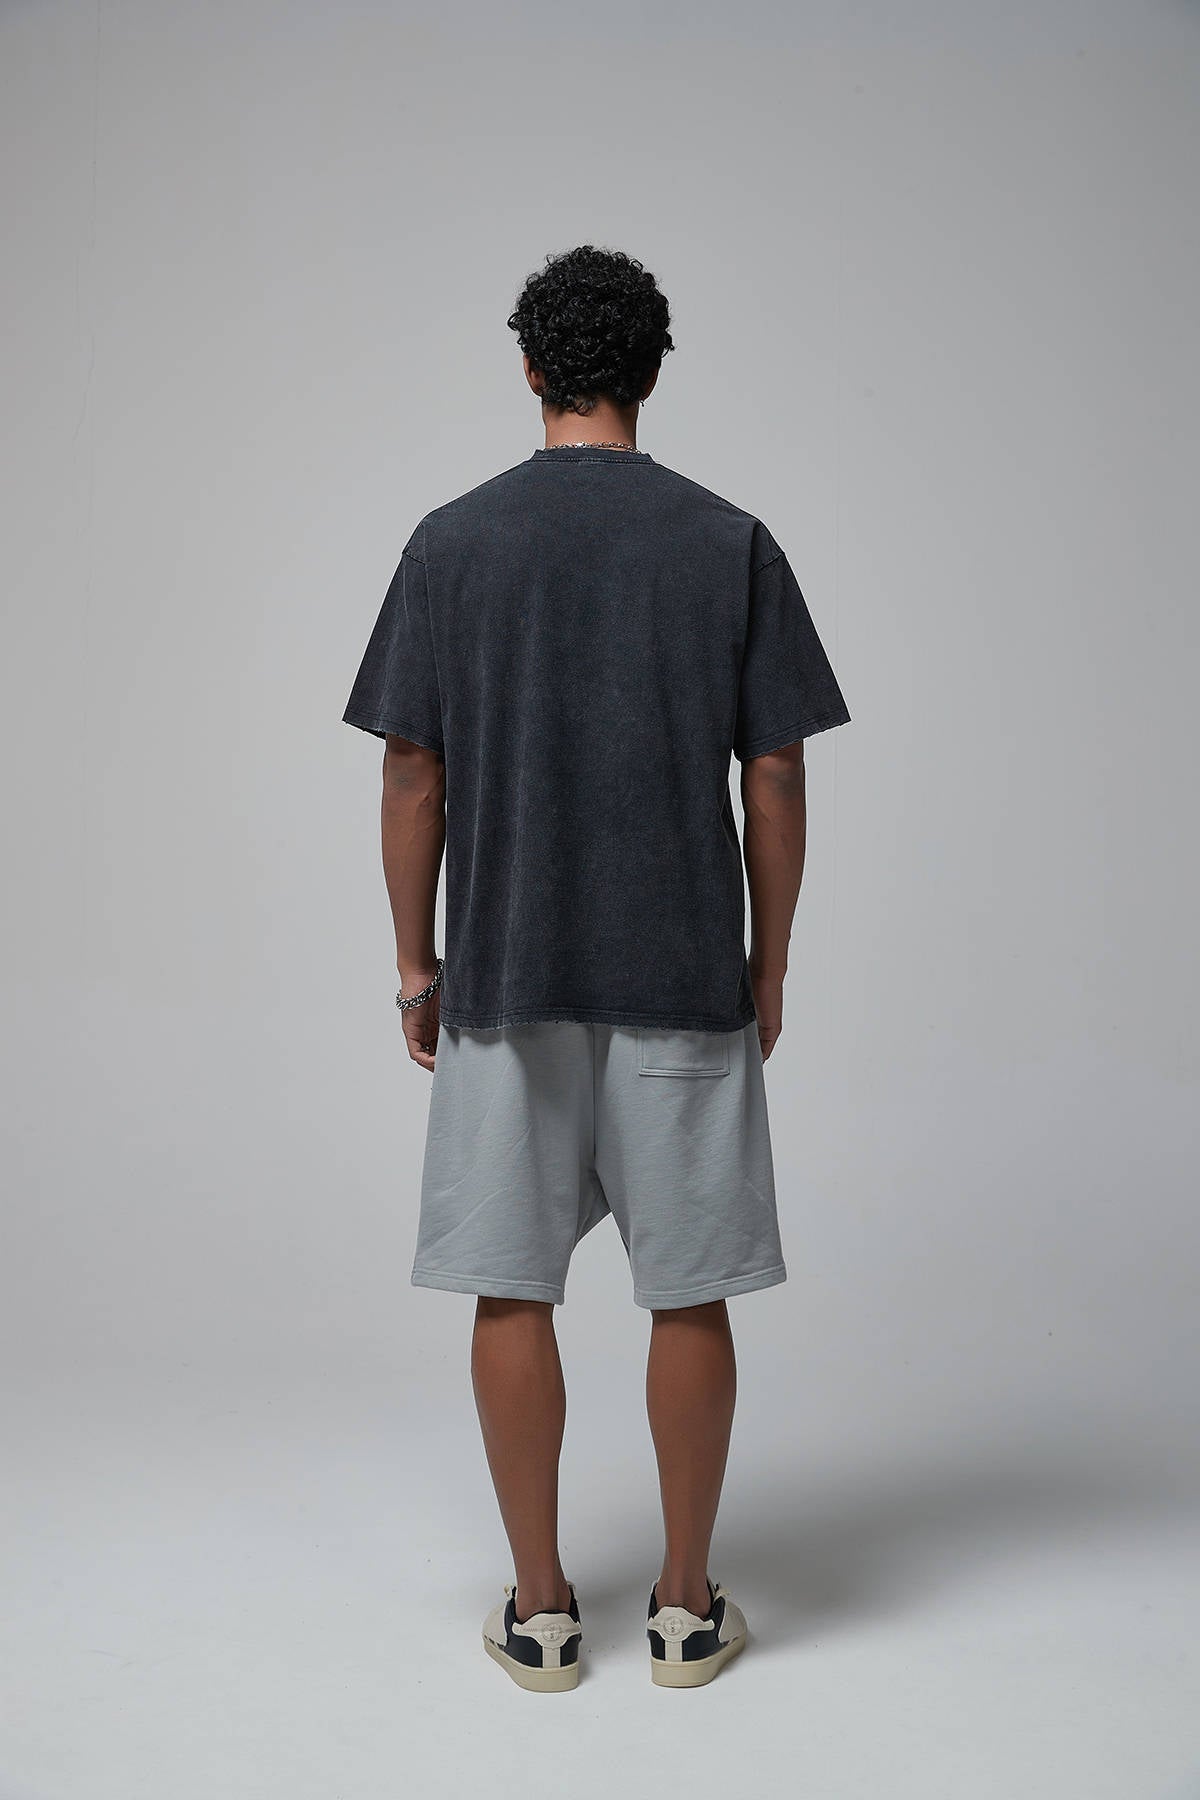 Kobe Bryant Print Men T-Shirt